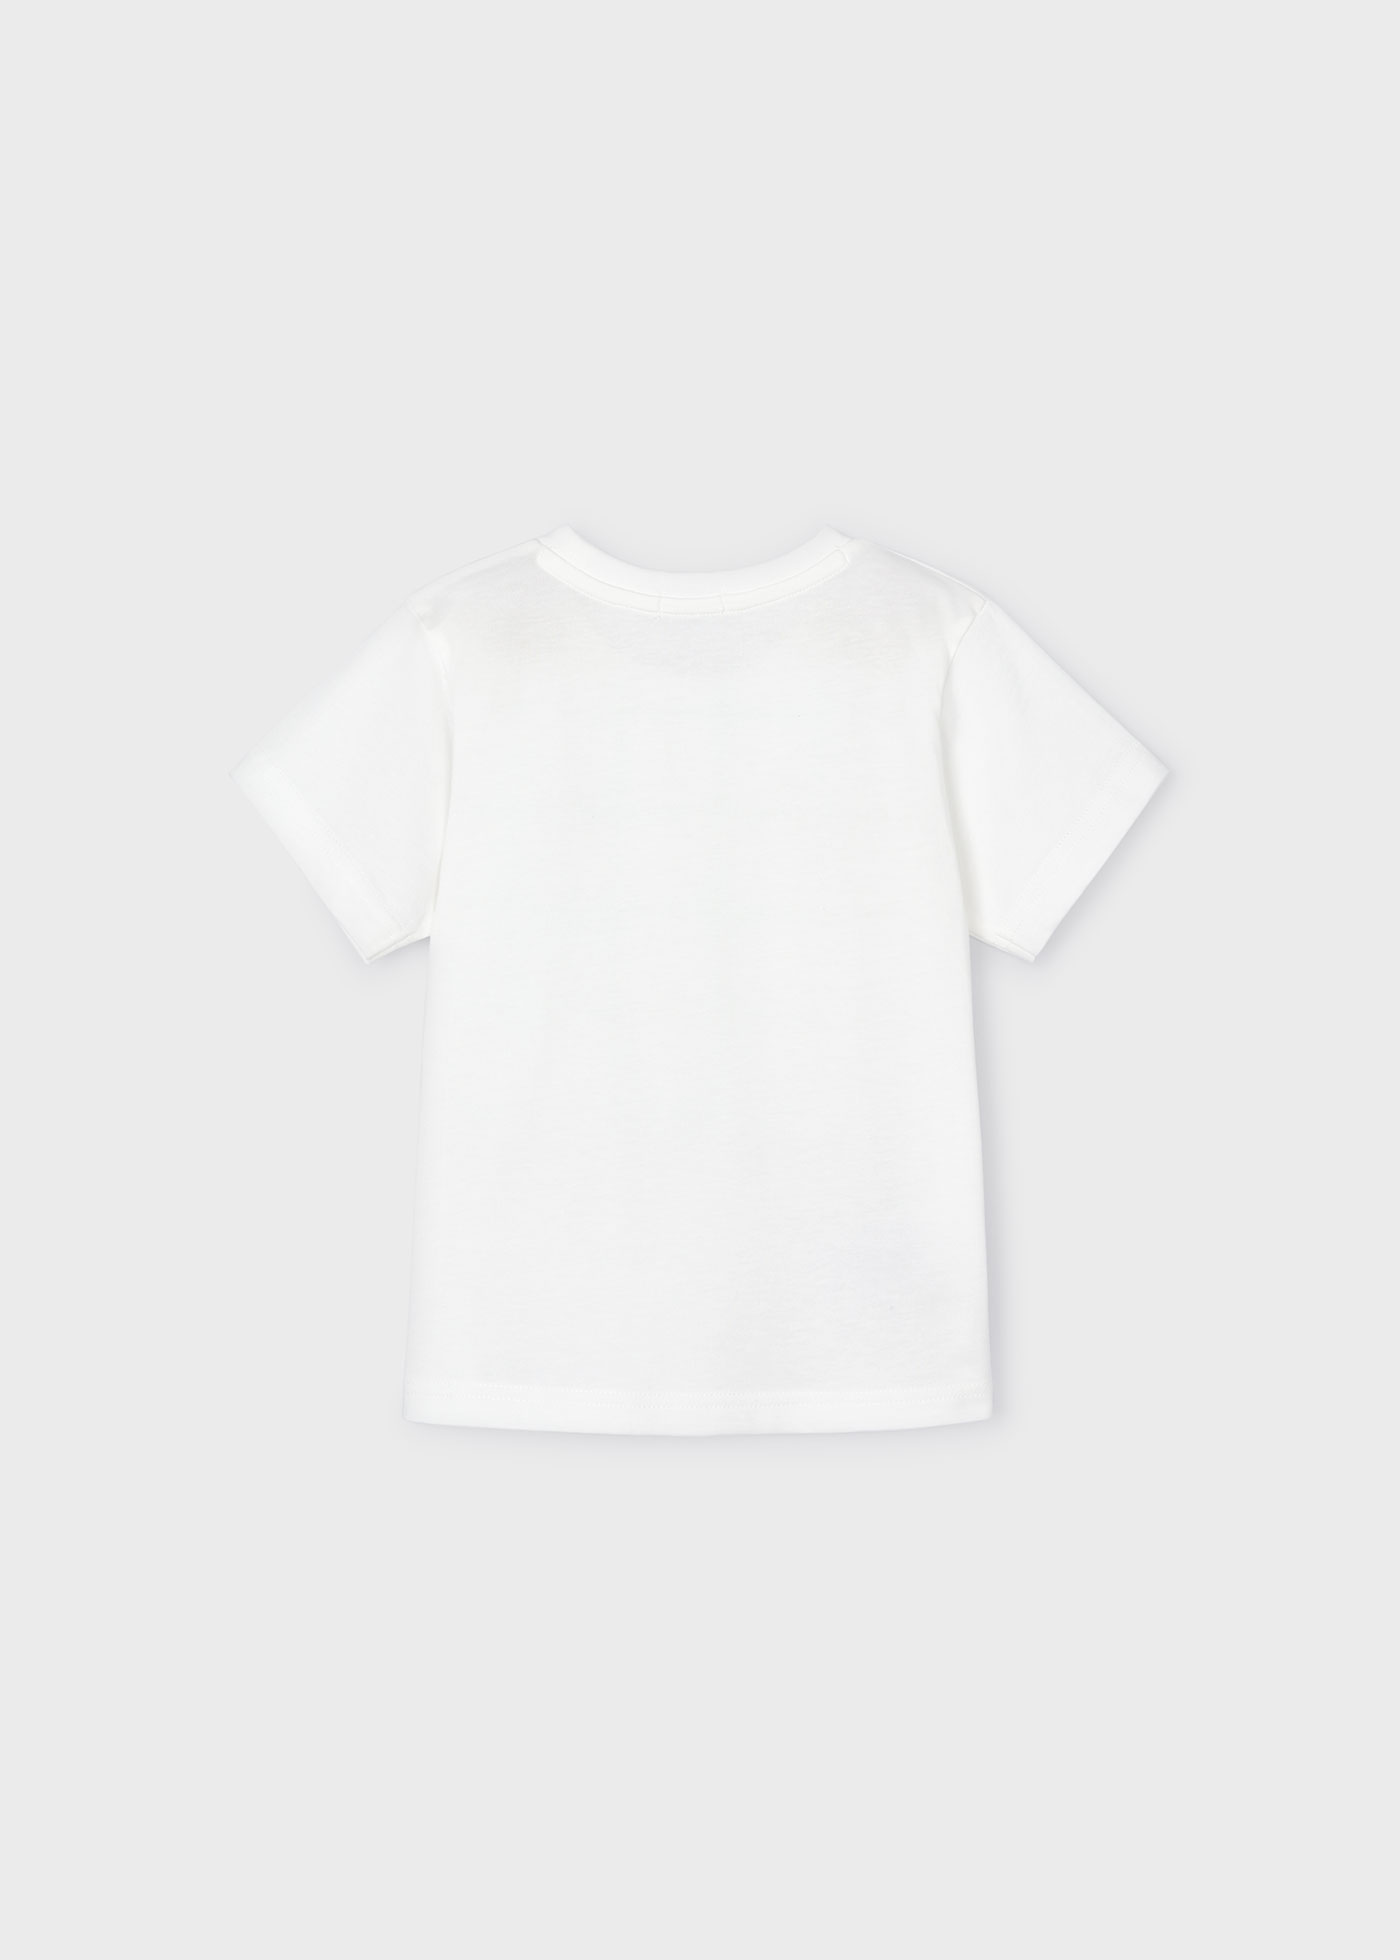 T-Shirt Bild Better Cotton Jungen